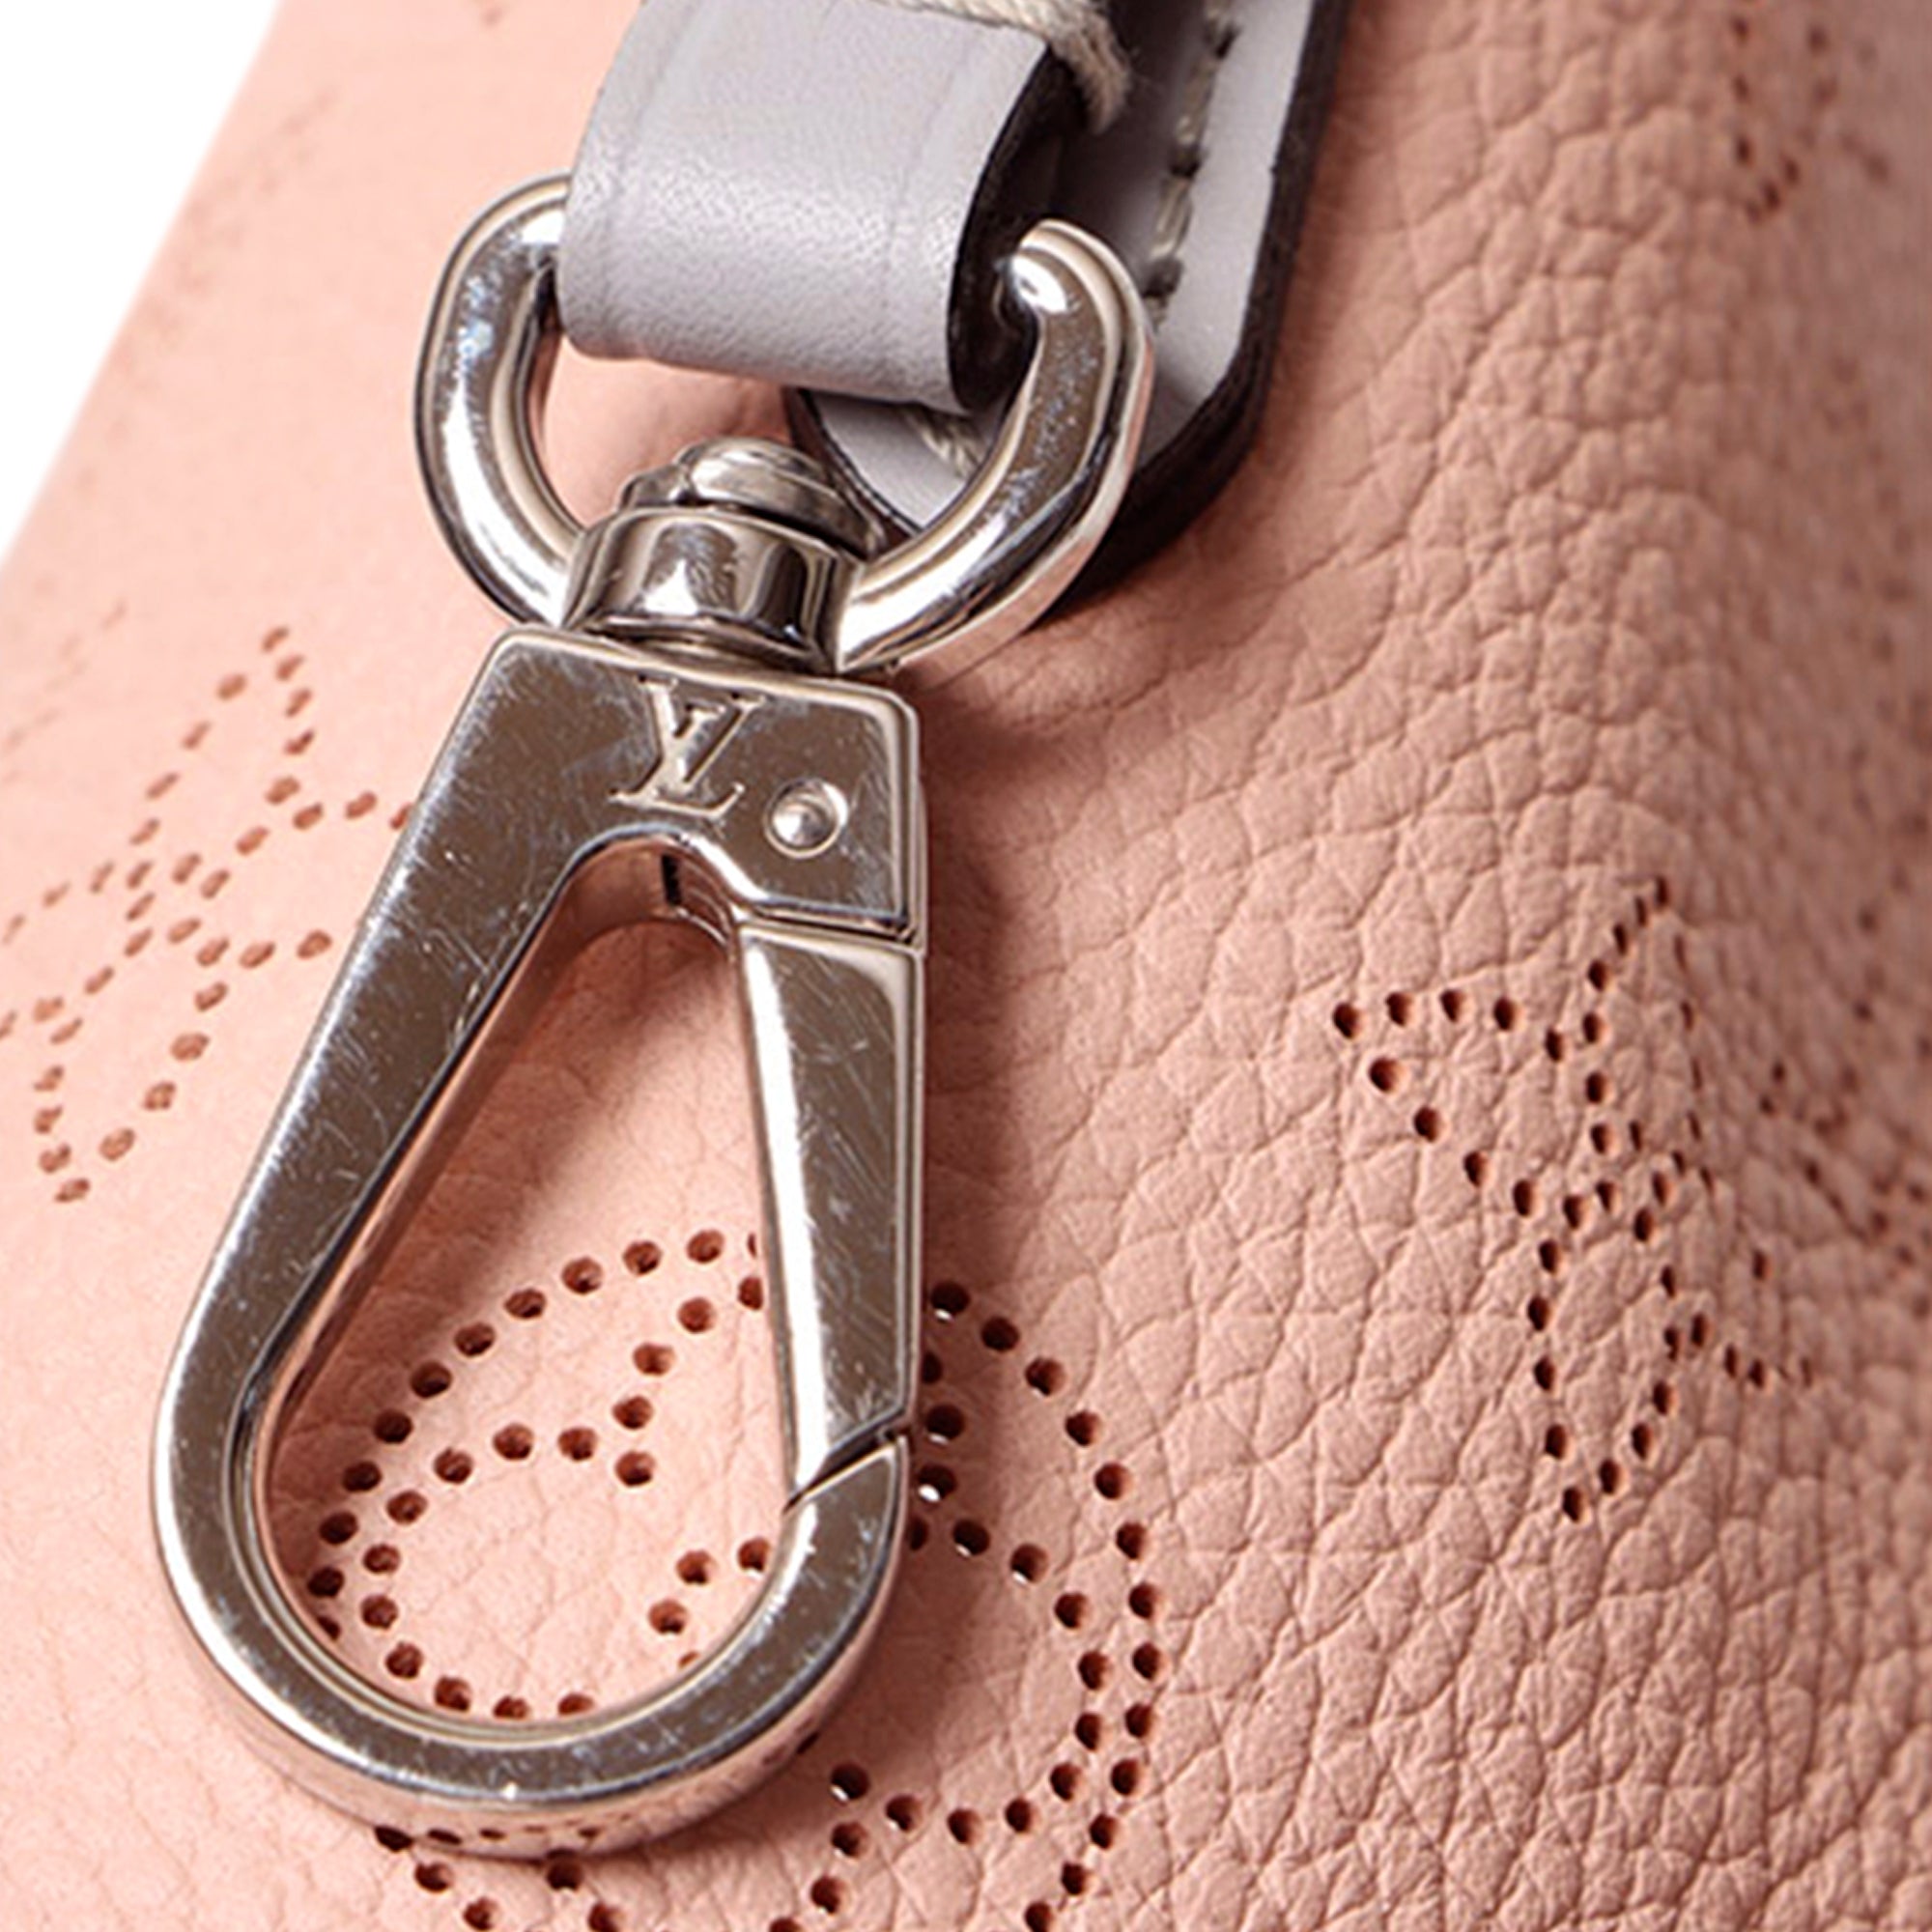 Louis Vuitton Braided Handle Hina Handbag Mahina Leather PM at